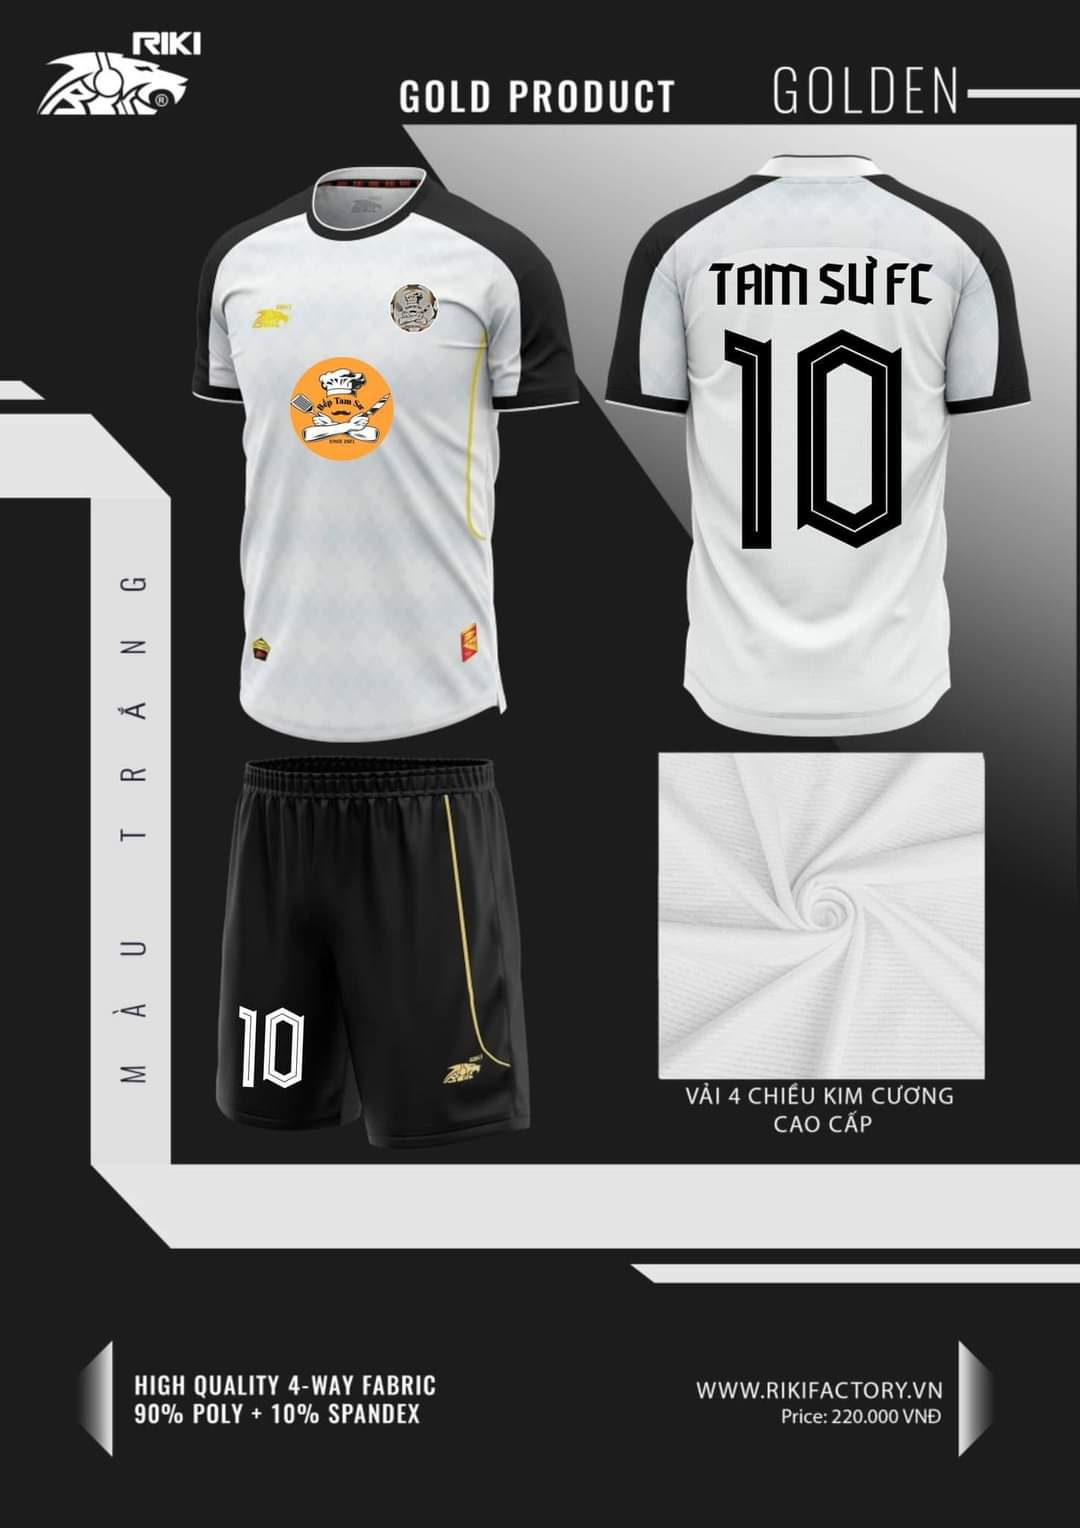 U19 TAM SƯ FC